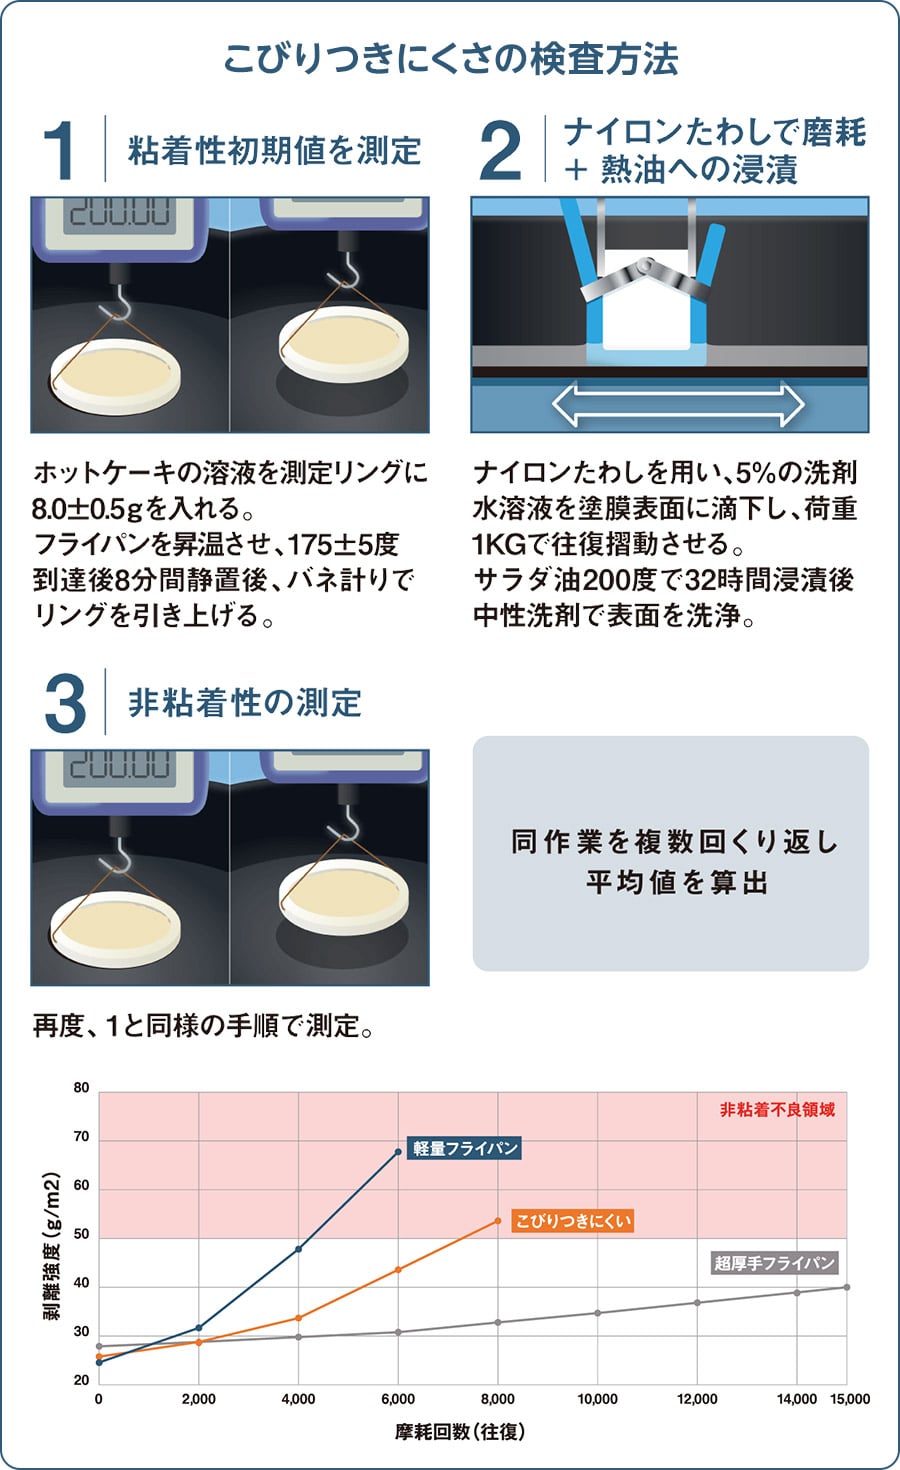 こびりつきにくさの検査方法 1：粘着性初期値を測定 ホットケーキの溶液を測定リングに8.0±0.5gを入れる。フライパンを昇温させ、175±5度到達後8分間静置後、バネ計りでリングを引き上げる。 2：ナイロンたわしで磨耗+熱油への浸漬 ナイロンたわしを用い、5%の洗剤水溶液を塗膜表面に滴下し、荷重1KGで往復摺動させる。サラダ油200度で32時間浸漬後中性洗剤で表面を洗浄。 3：非粘着性の測定 同作業を複数回くり返し平均値を算出 再度、1と同様の手順で測定。